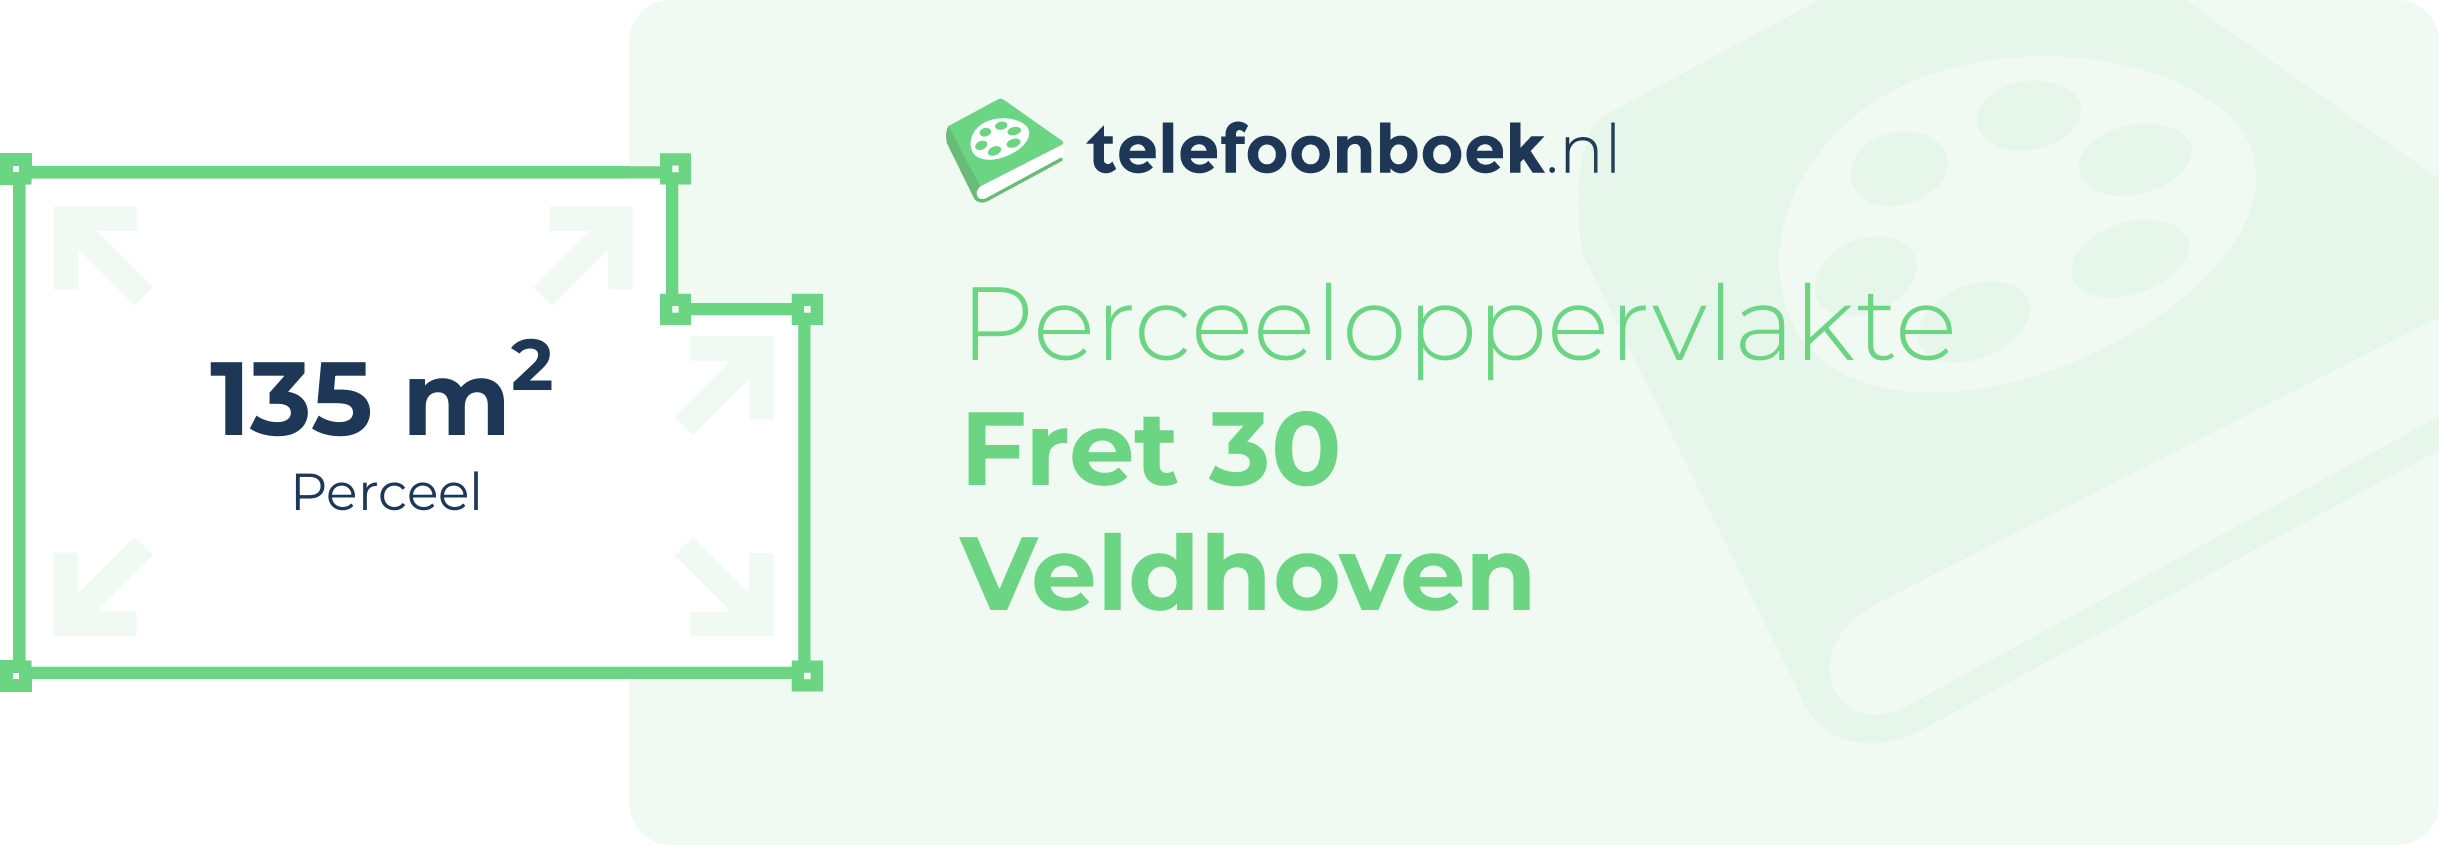 Perceeloppervlakte Fret 30 Veldhoven